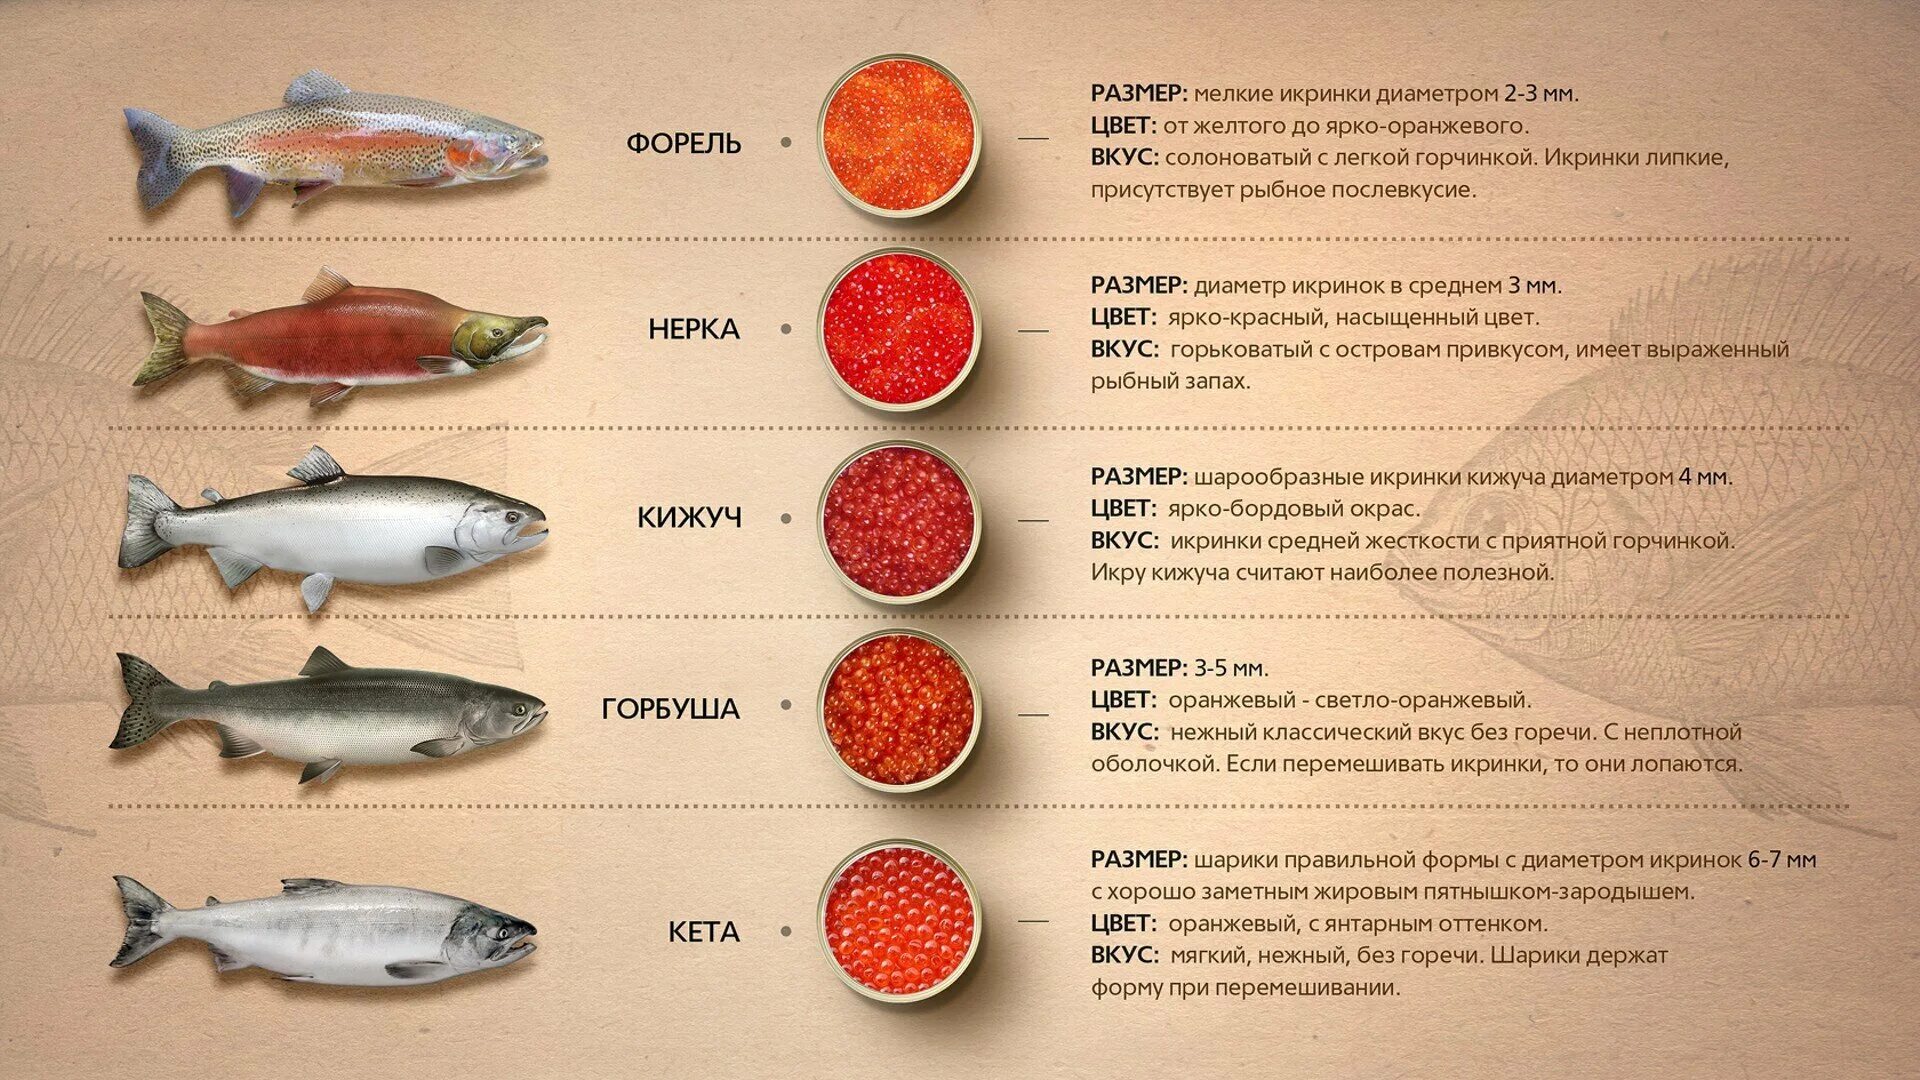 Рыбы семейства лососевых названия. Красная рыба виды названия. Размер икры лососевых рыб. Диаметр икринок лососевых рыб. Лососевая рыба сканворд 5